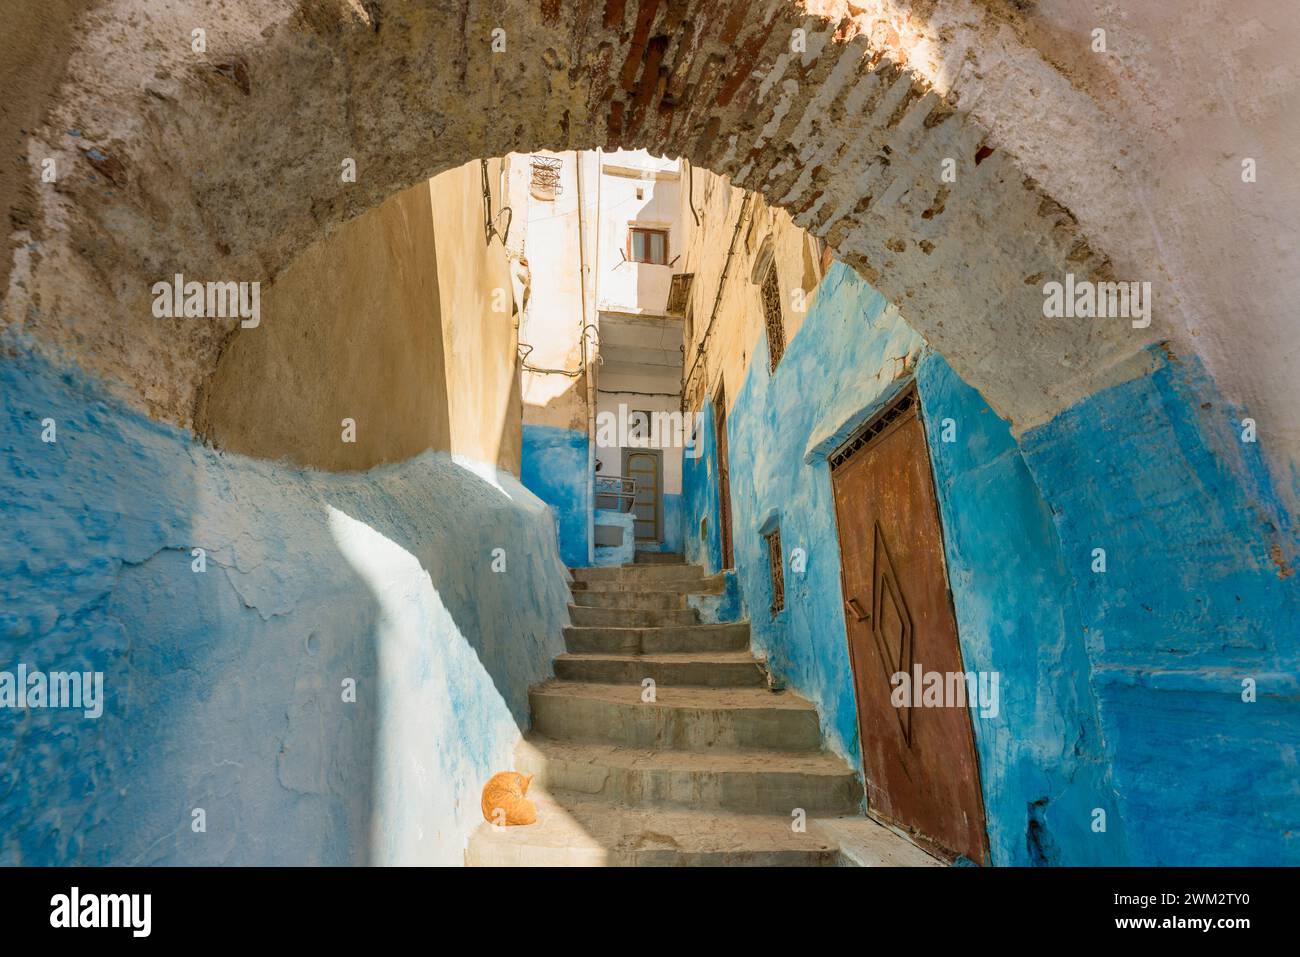 Vista de una pintoresca calle pintada de azul con escalones y arcos en una antigua medina de Tetuán, Marruecos, norte de África Foto de stock